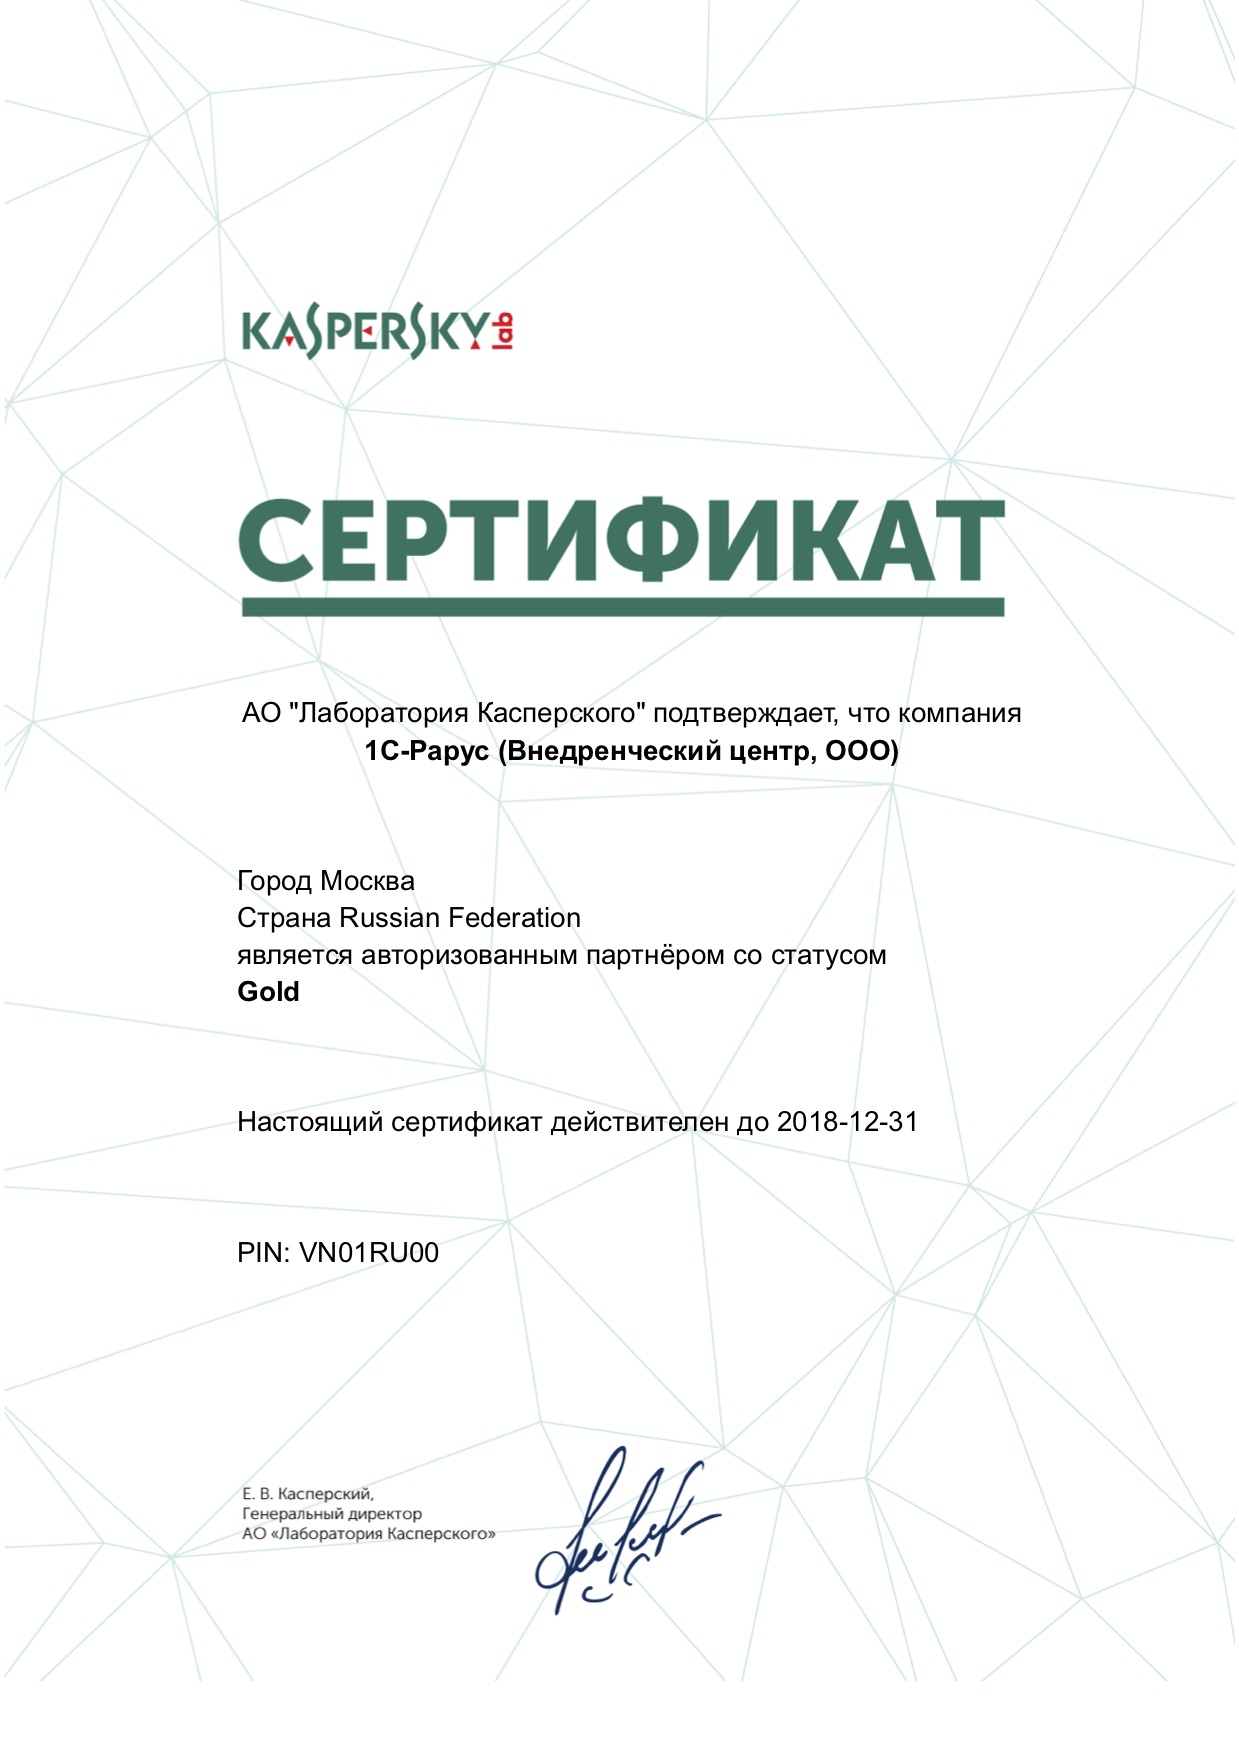 Автоматизированный партнер АО «Лаборатория Касперского» со статусом Gold 2018